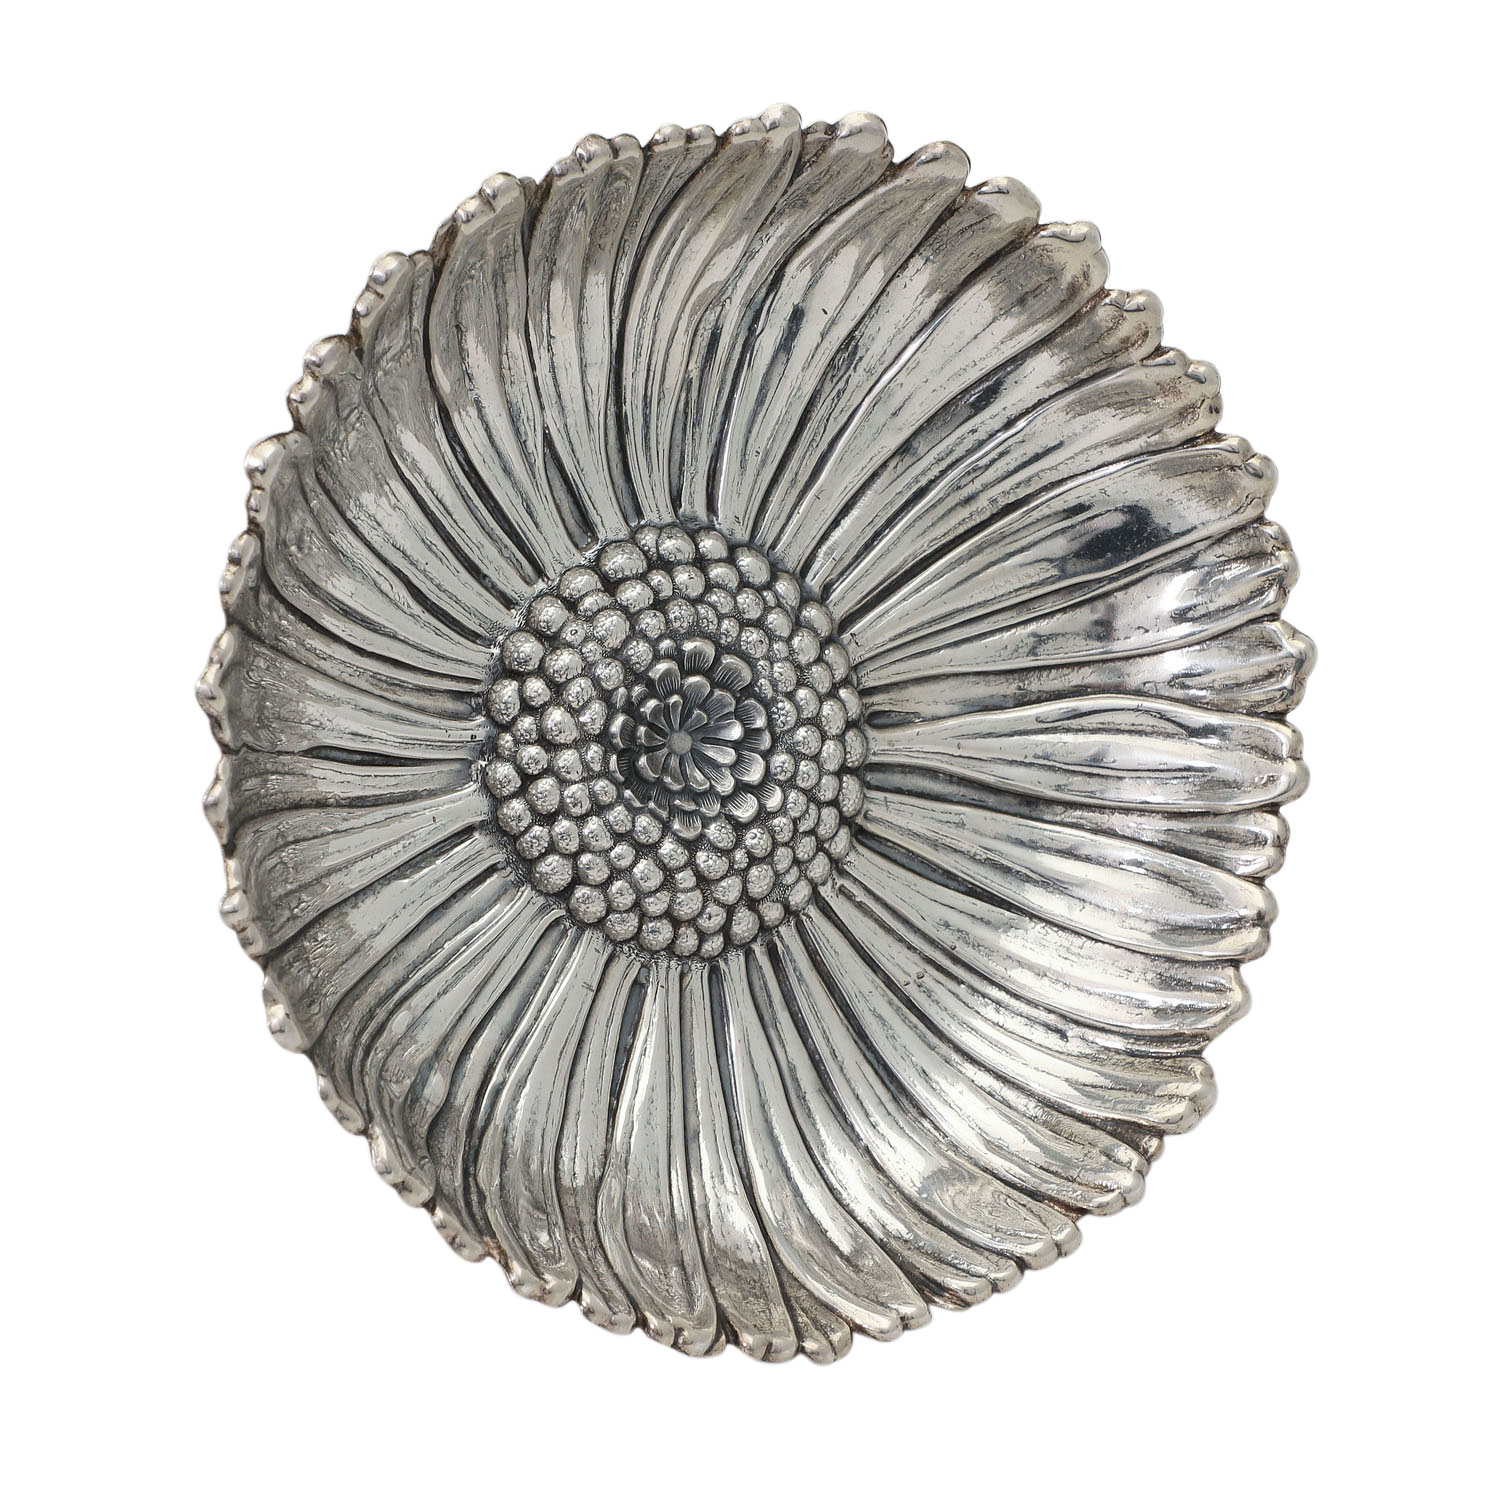 GIANMARIA BUCCELLATI Schale 'Daisy', 925 Silber, 20. Jhd.Fein gearbeitete Schale in Form eines - Image 3 of 4